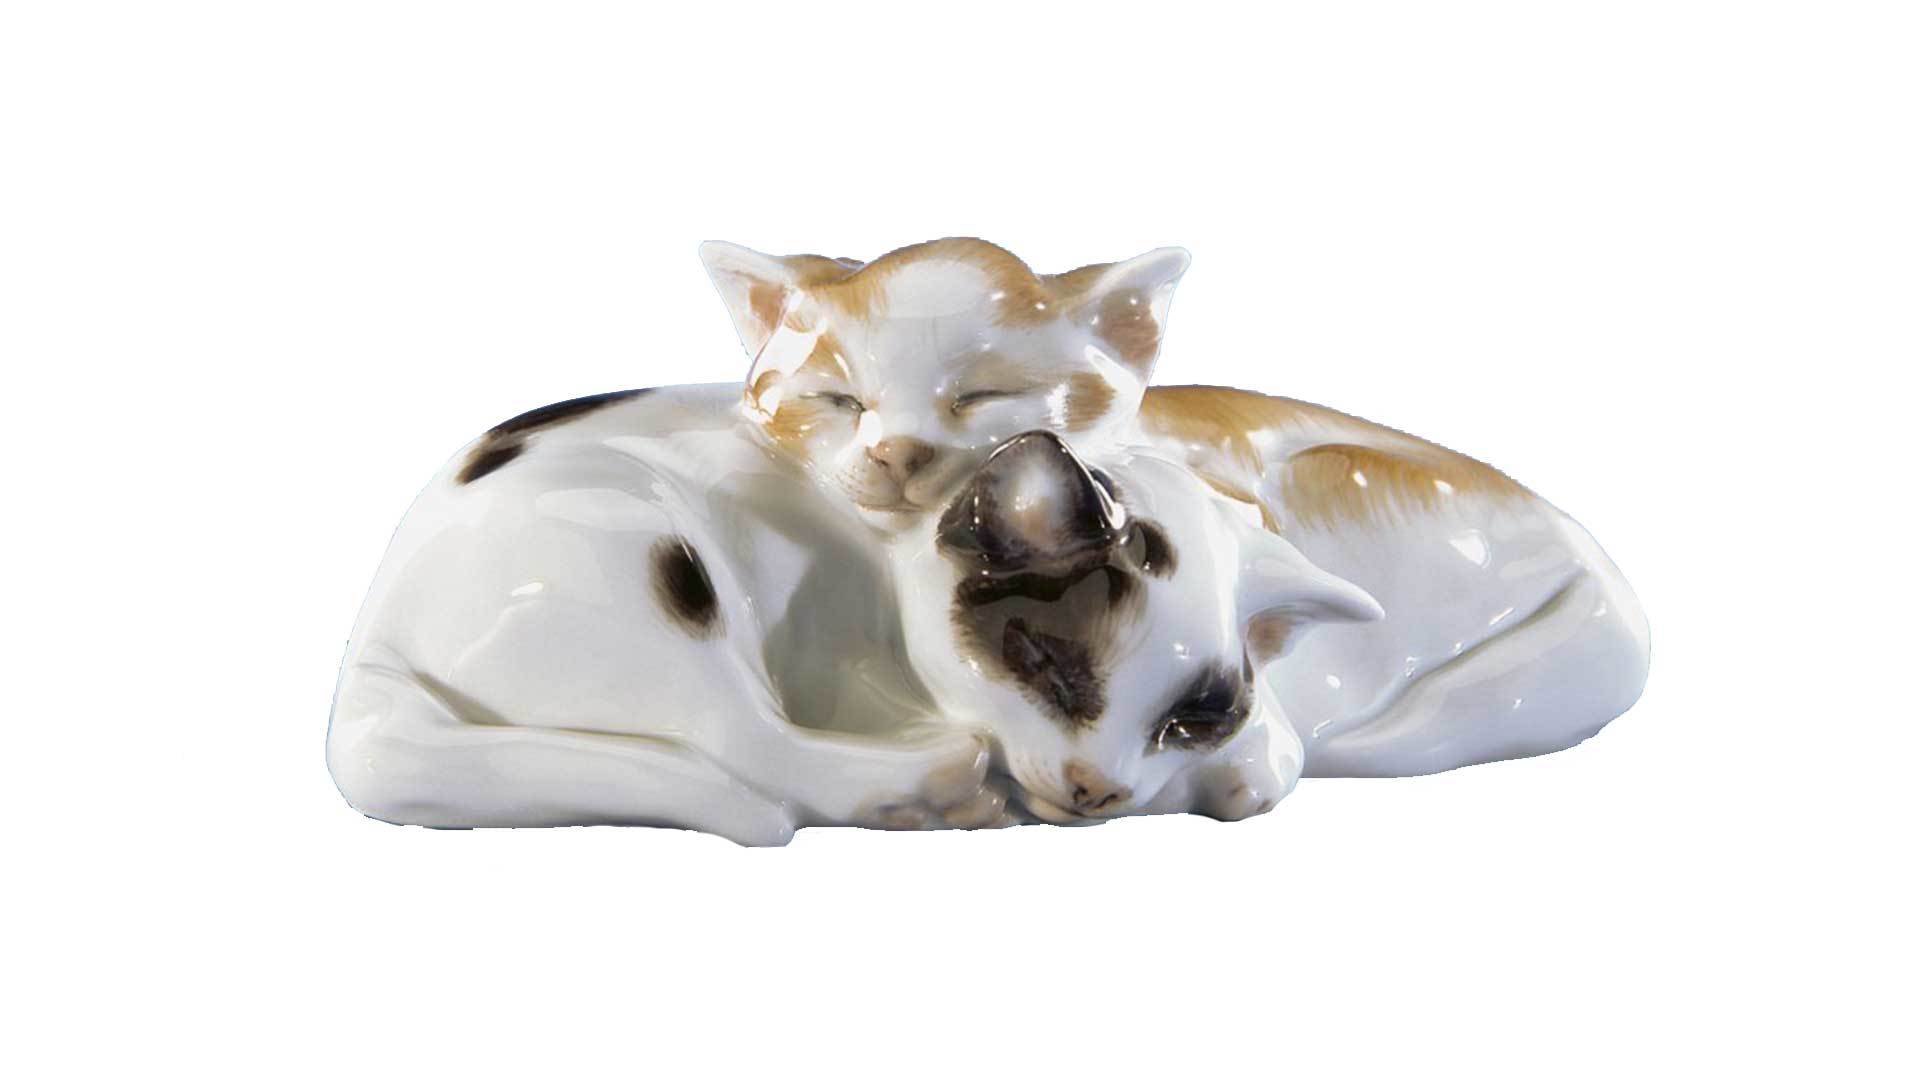 Фигурка Meissen 4,5 см Лежащие кошки, Эрих Хезель,1917г